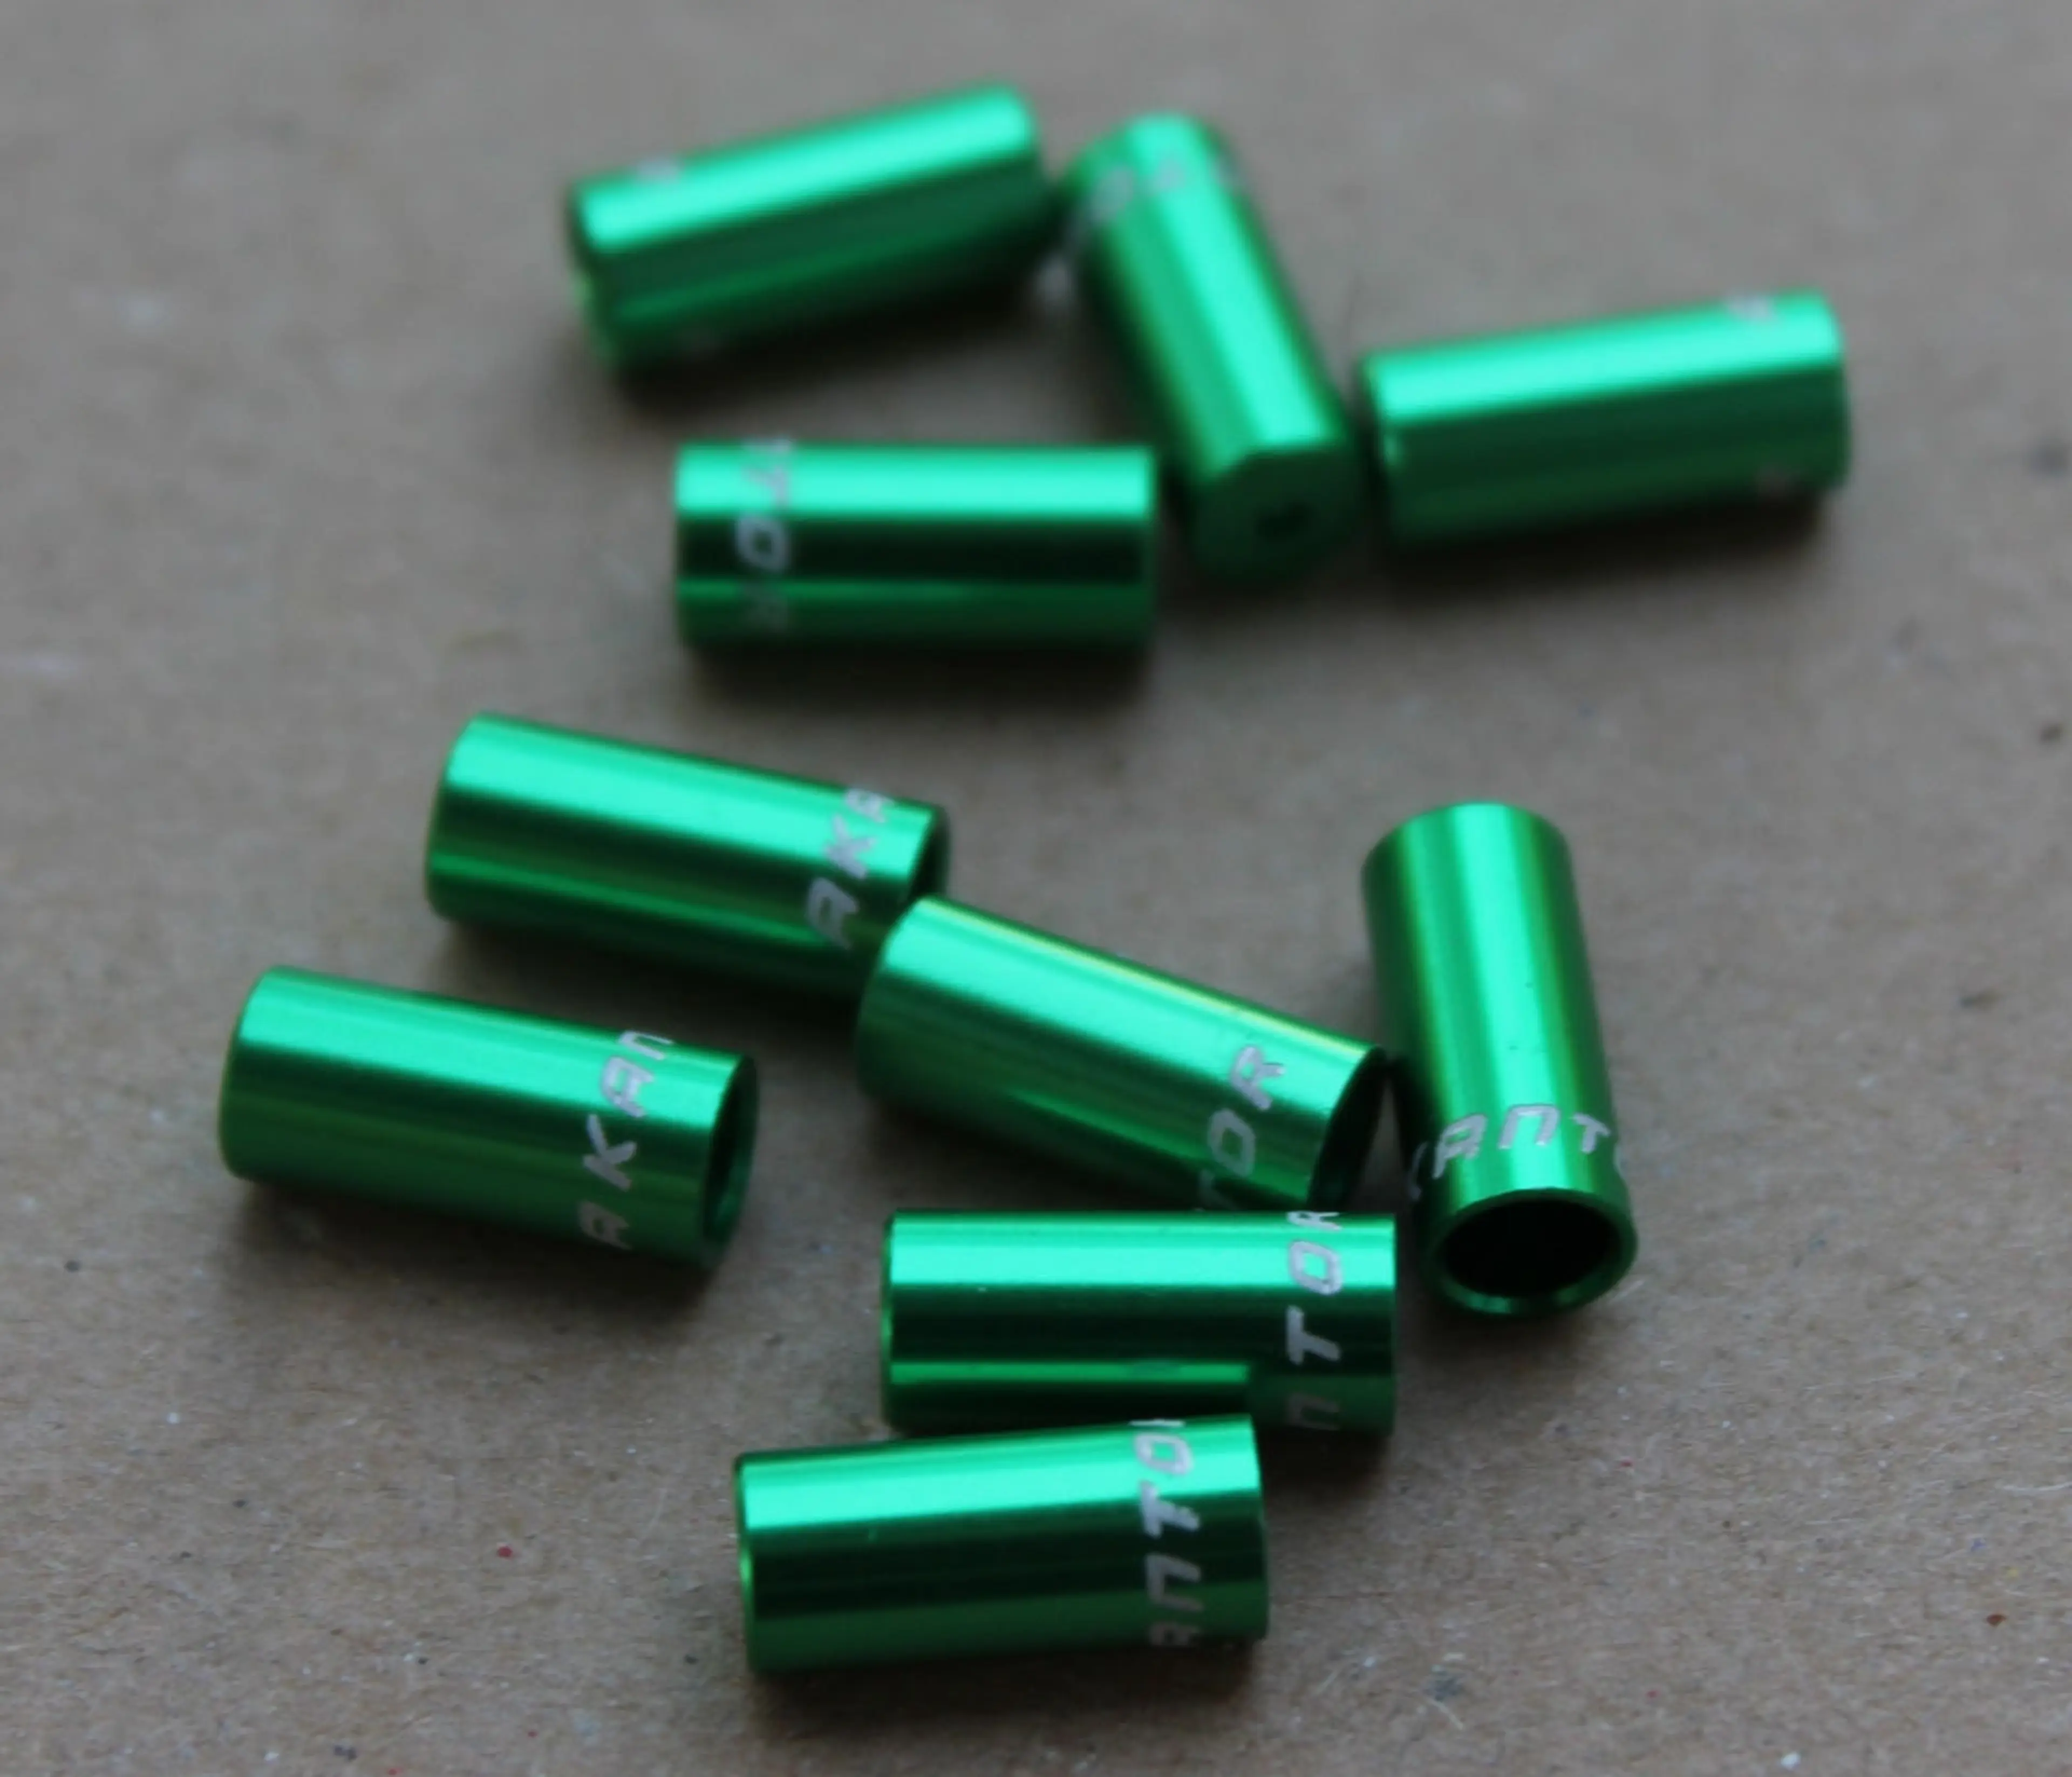 3. Capat camasa schimbator aluminiu 4mm - set 10buc. verde